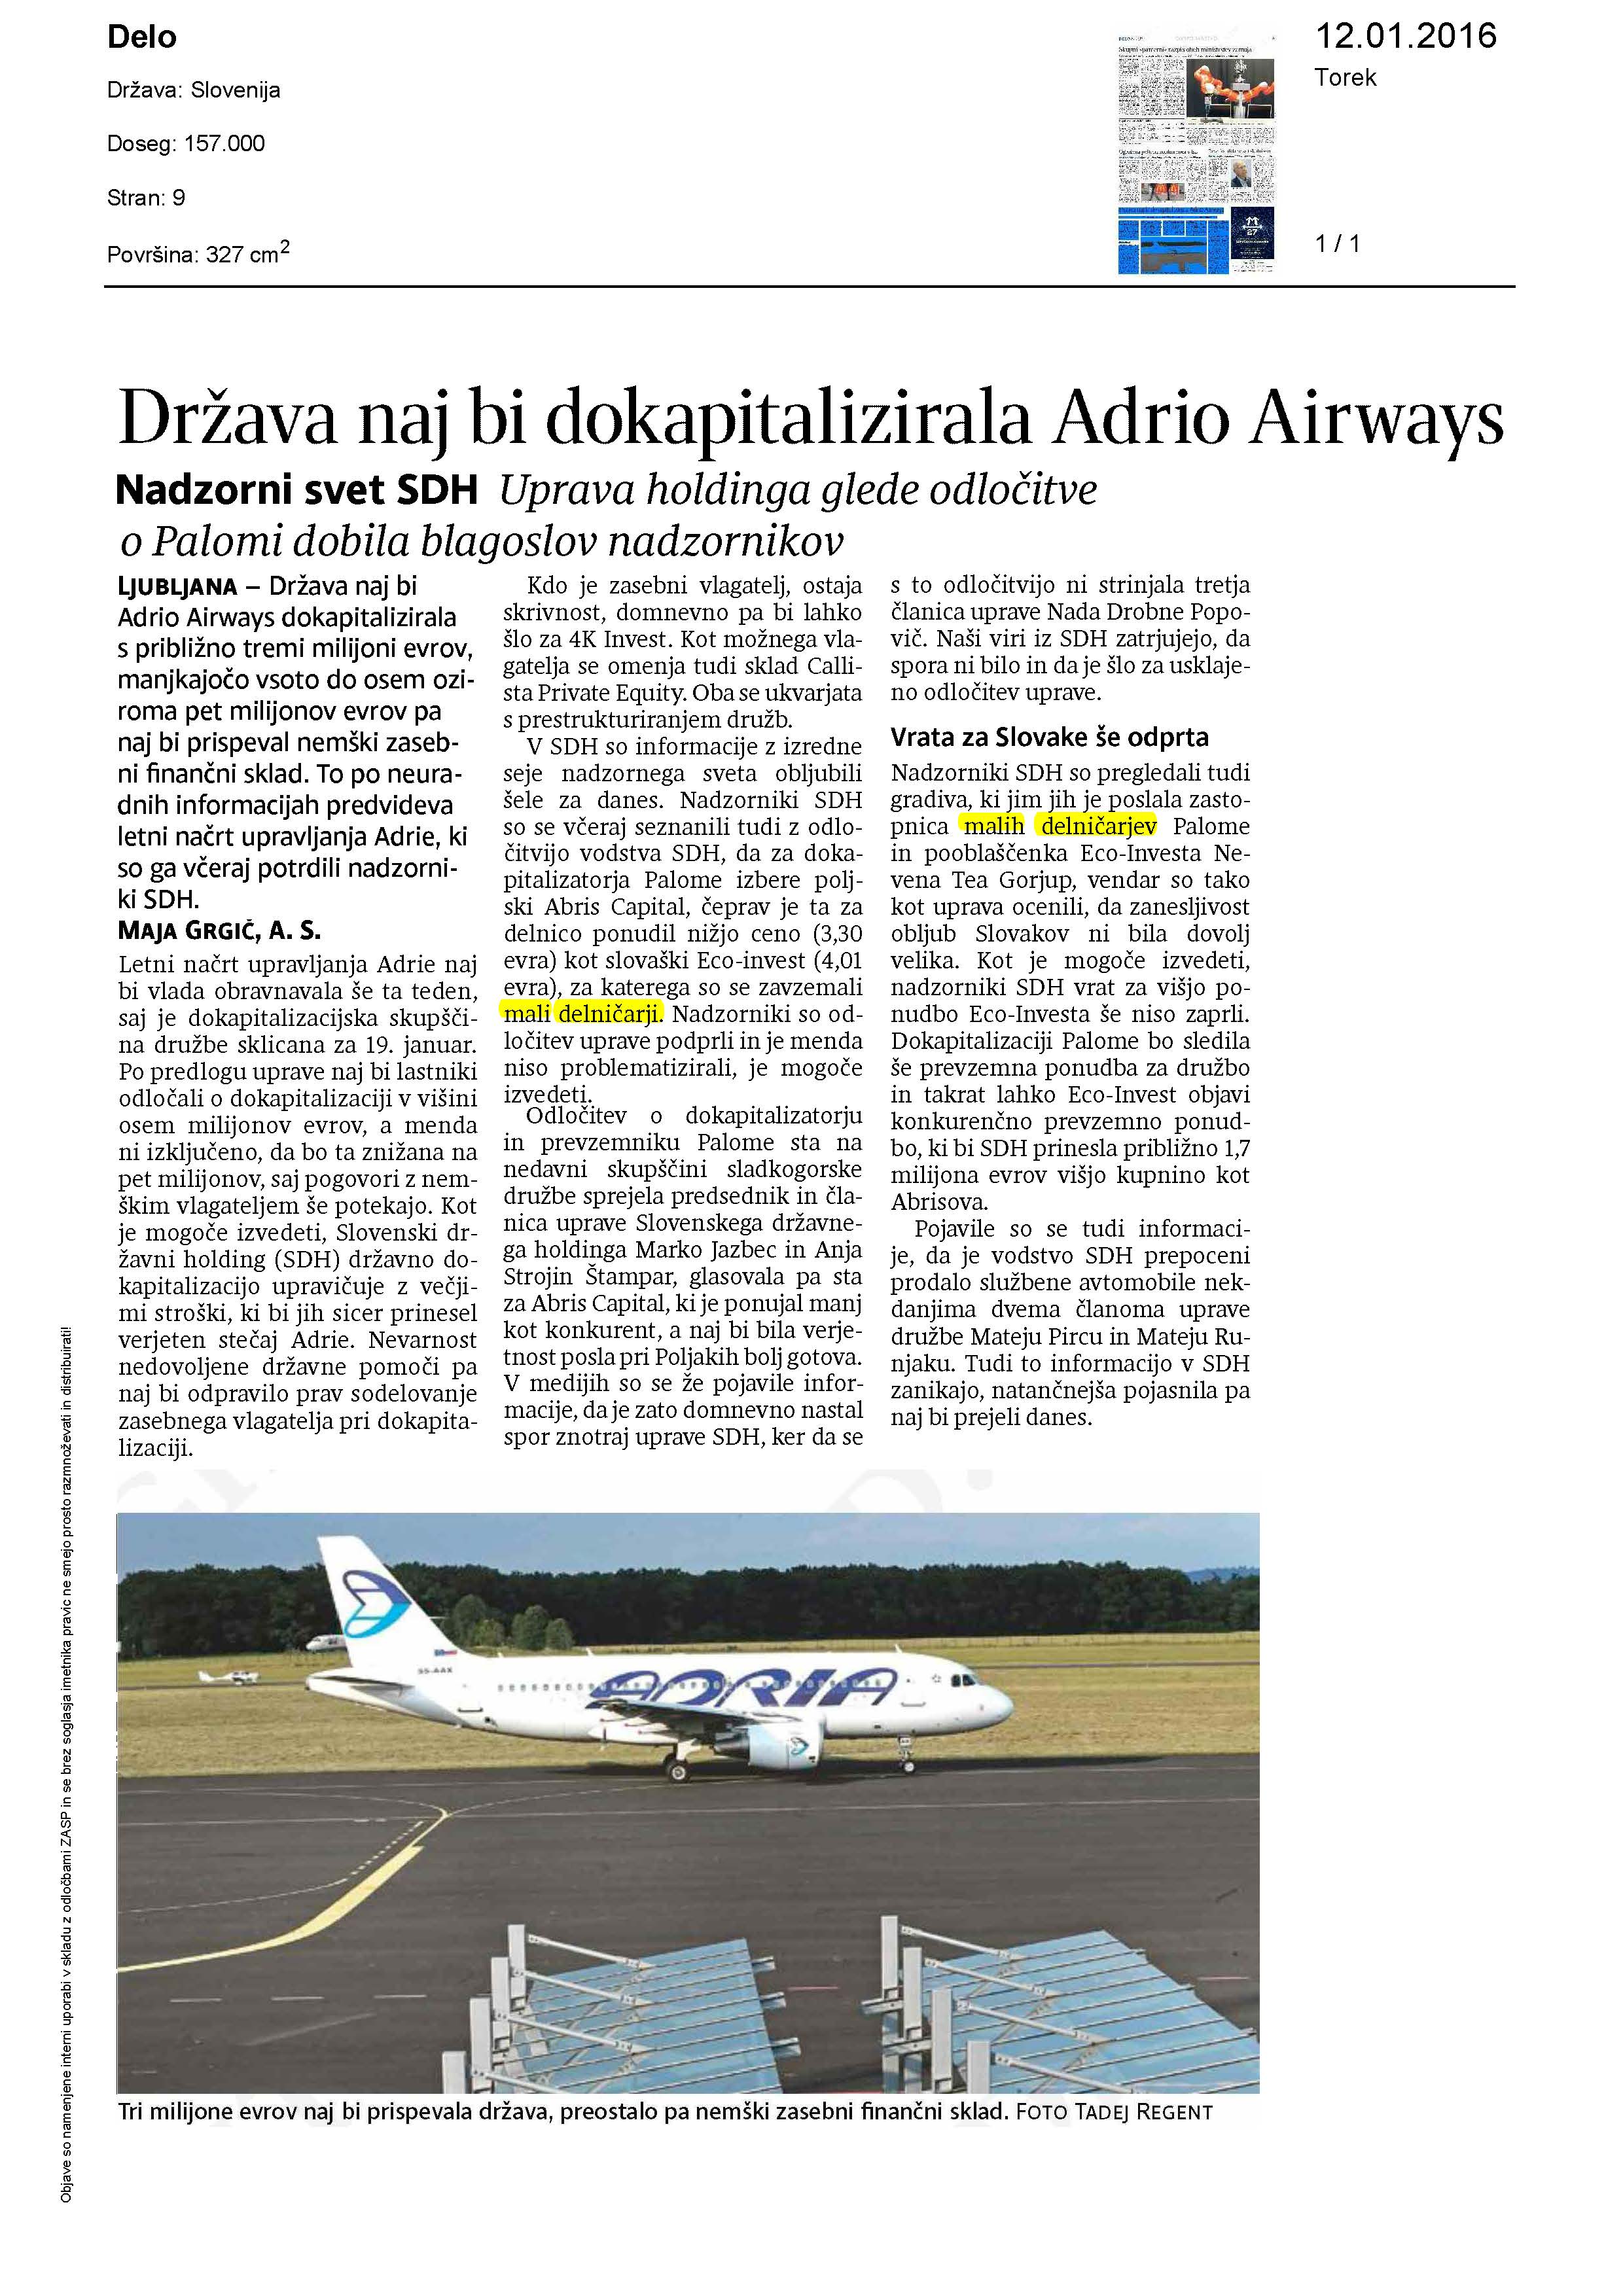 Država naj bi dokapitalizirala Adrio Airways